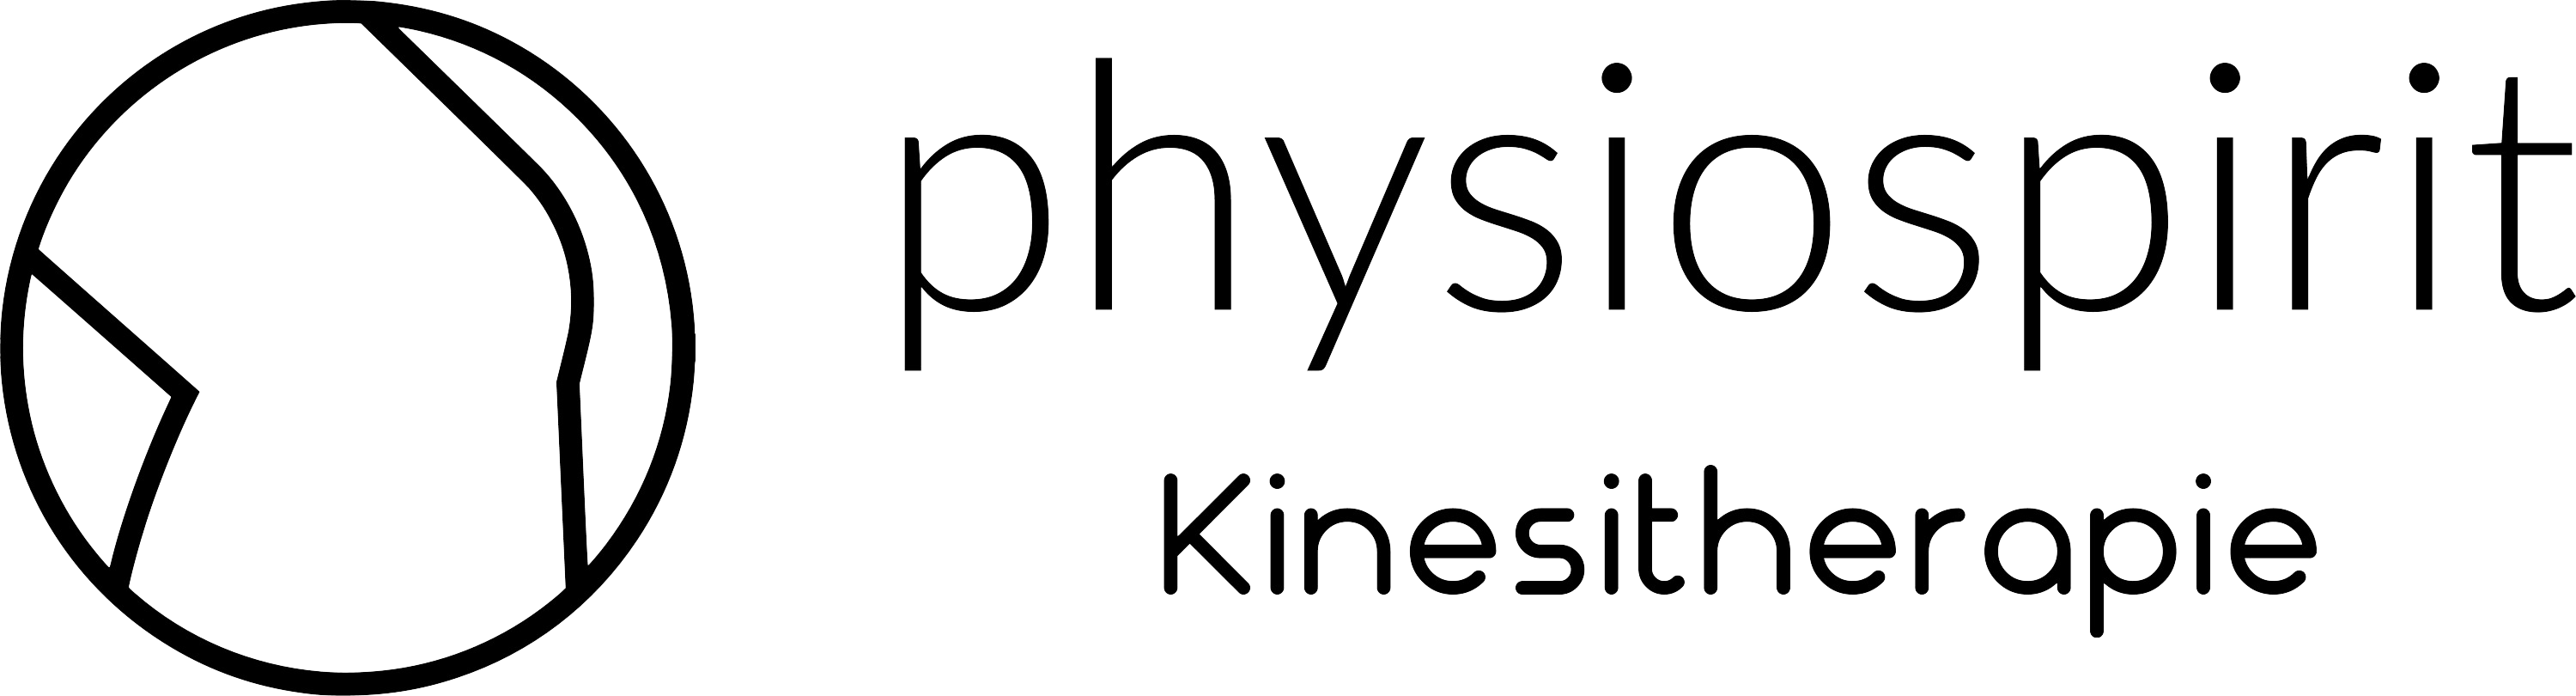 Physiospirit kinesitherapie logo